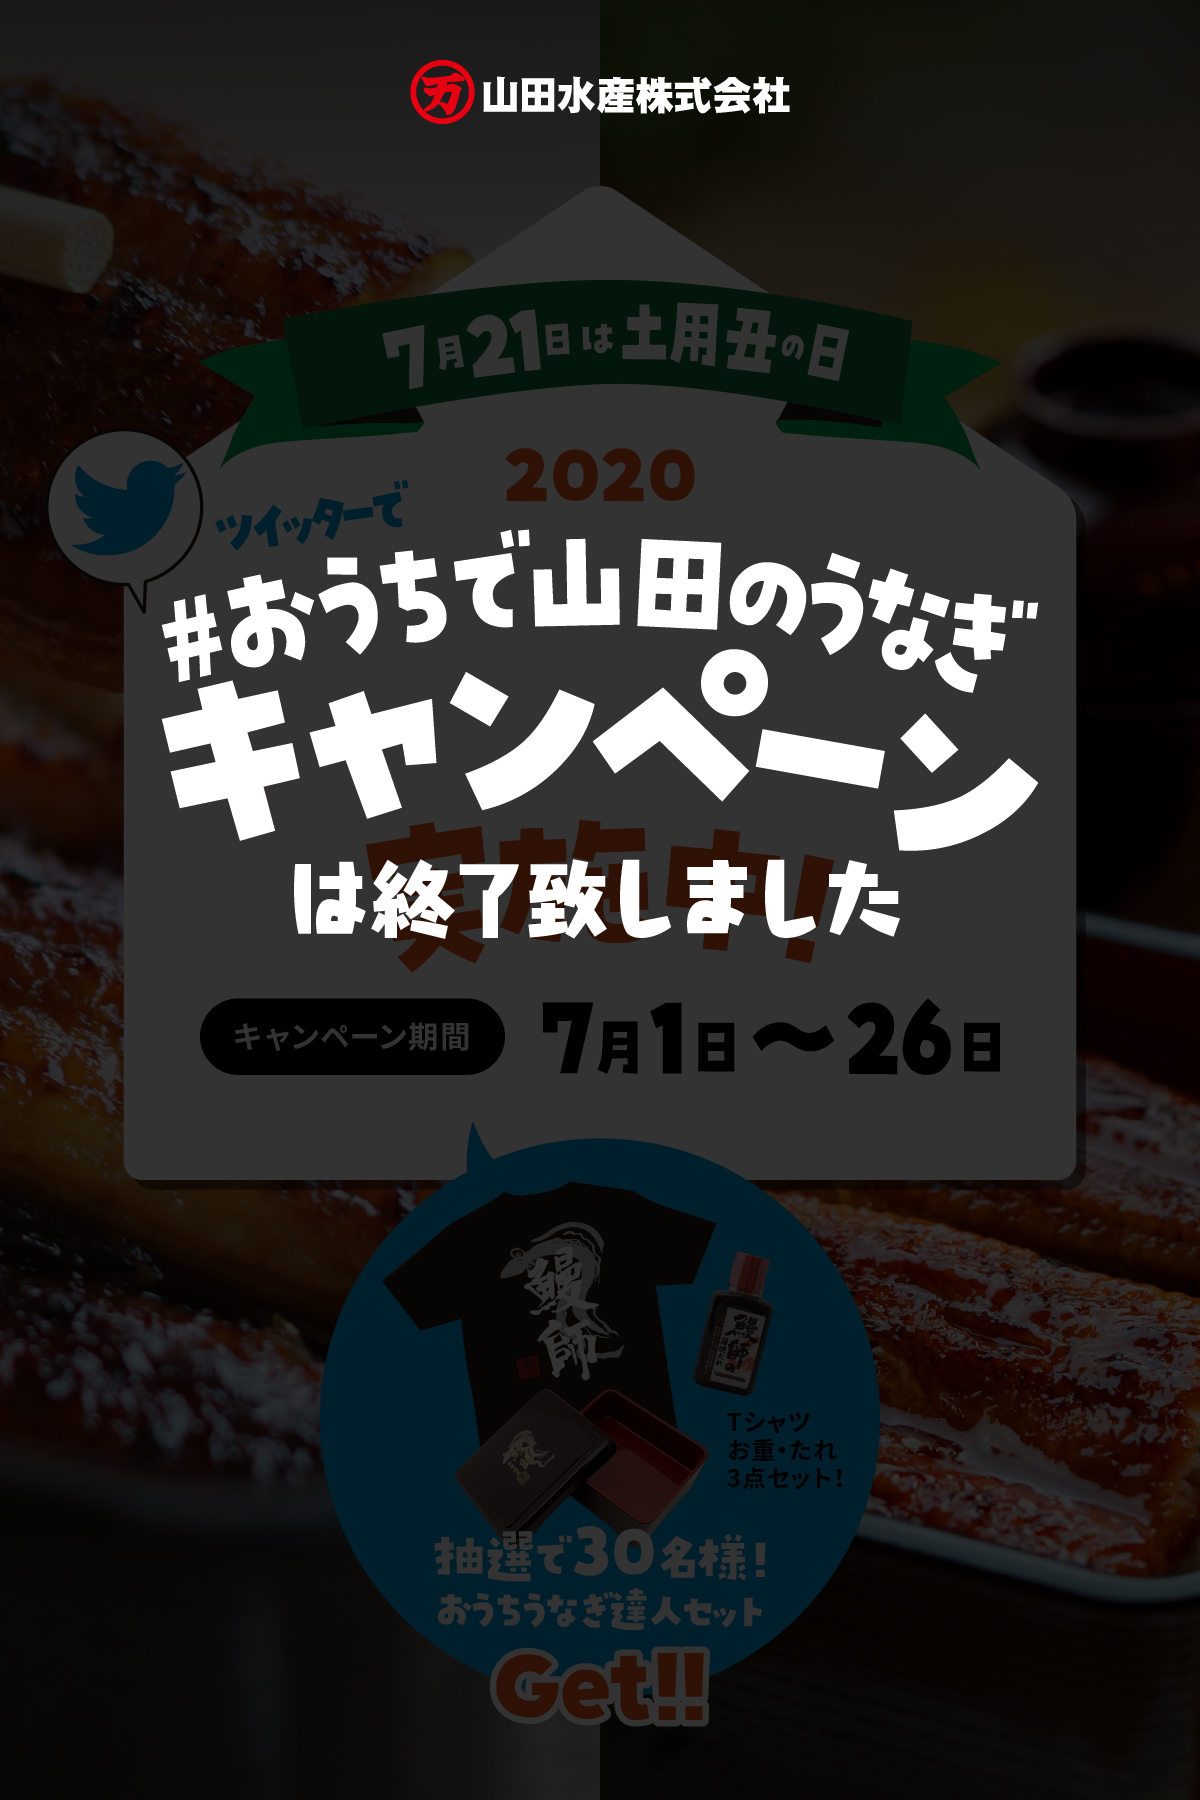 ツイッターで「#おうちで山田のうなぎ」キャンペーン2020